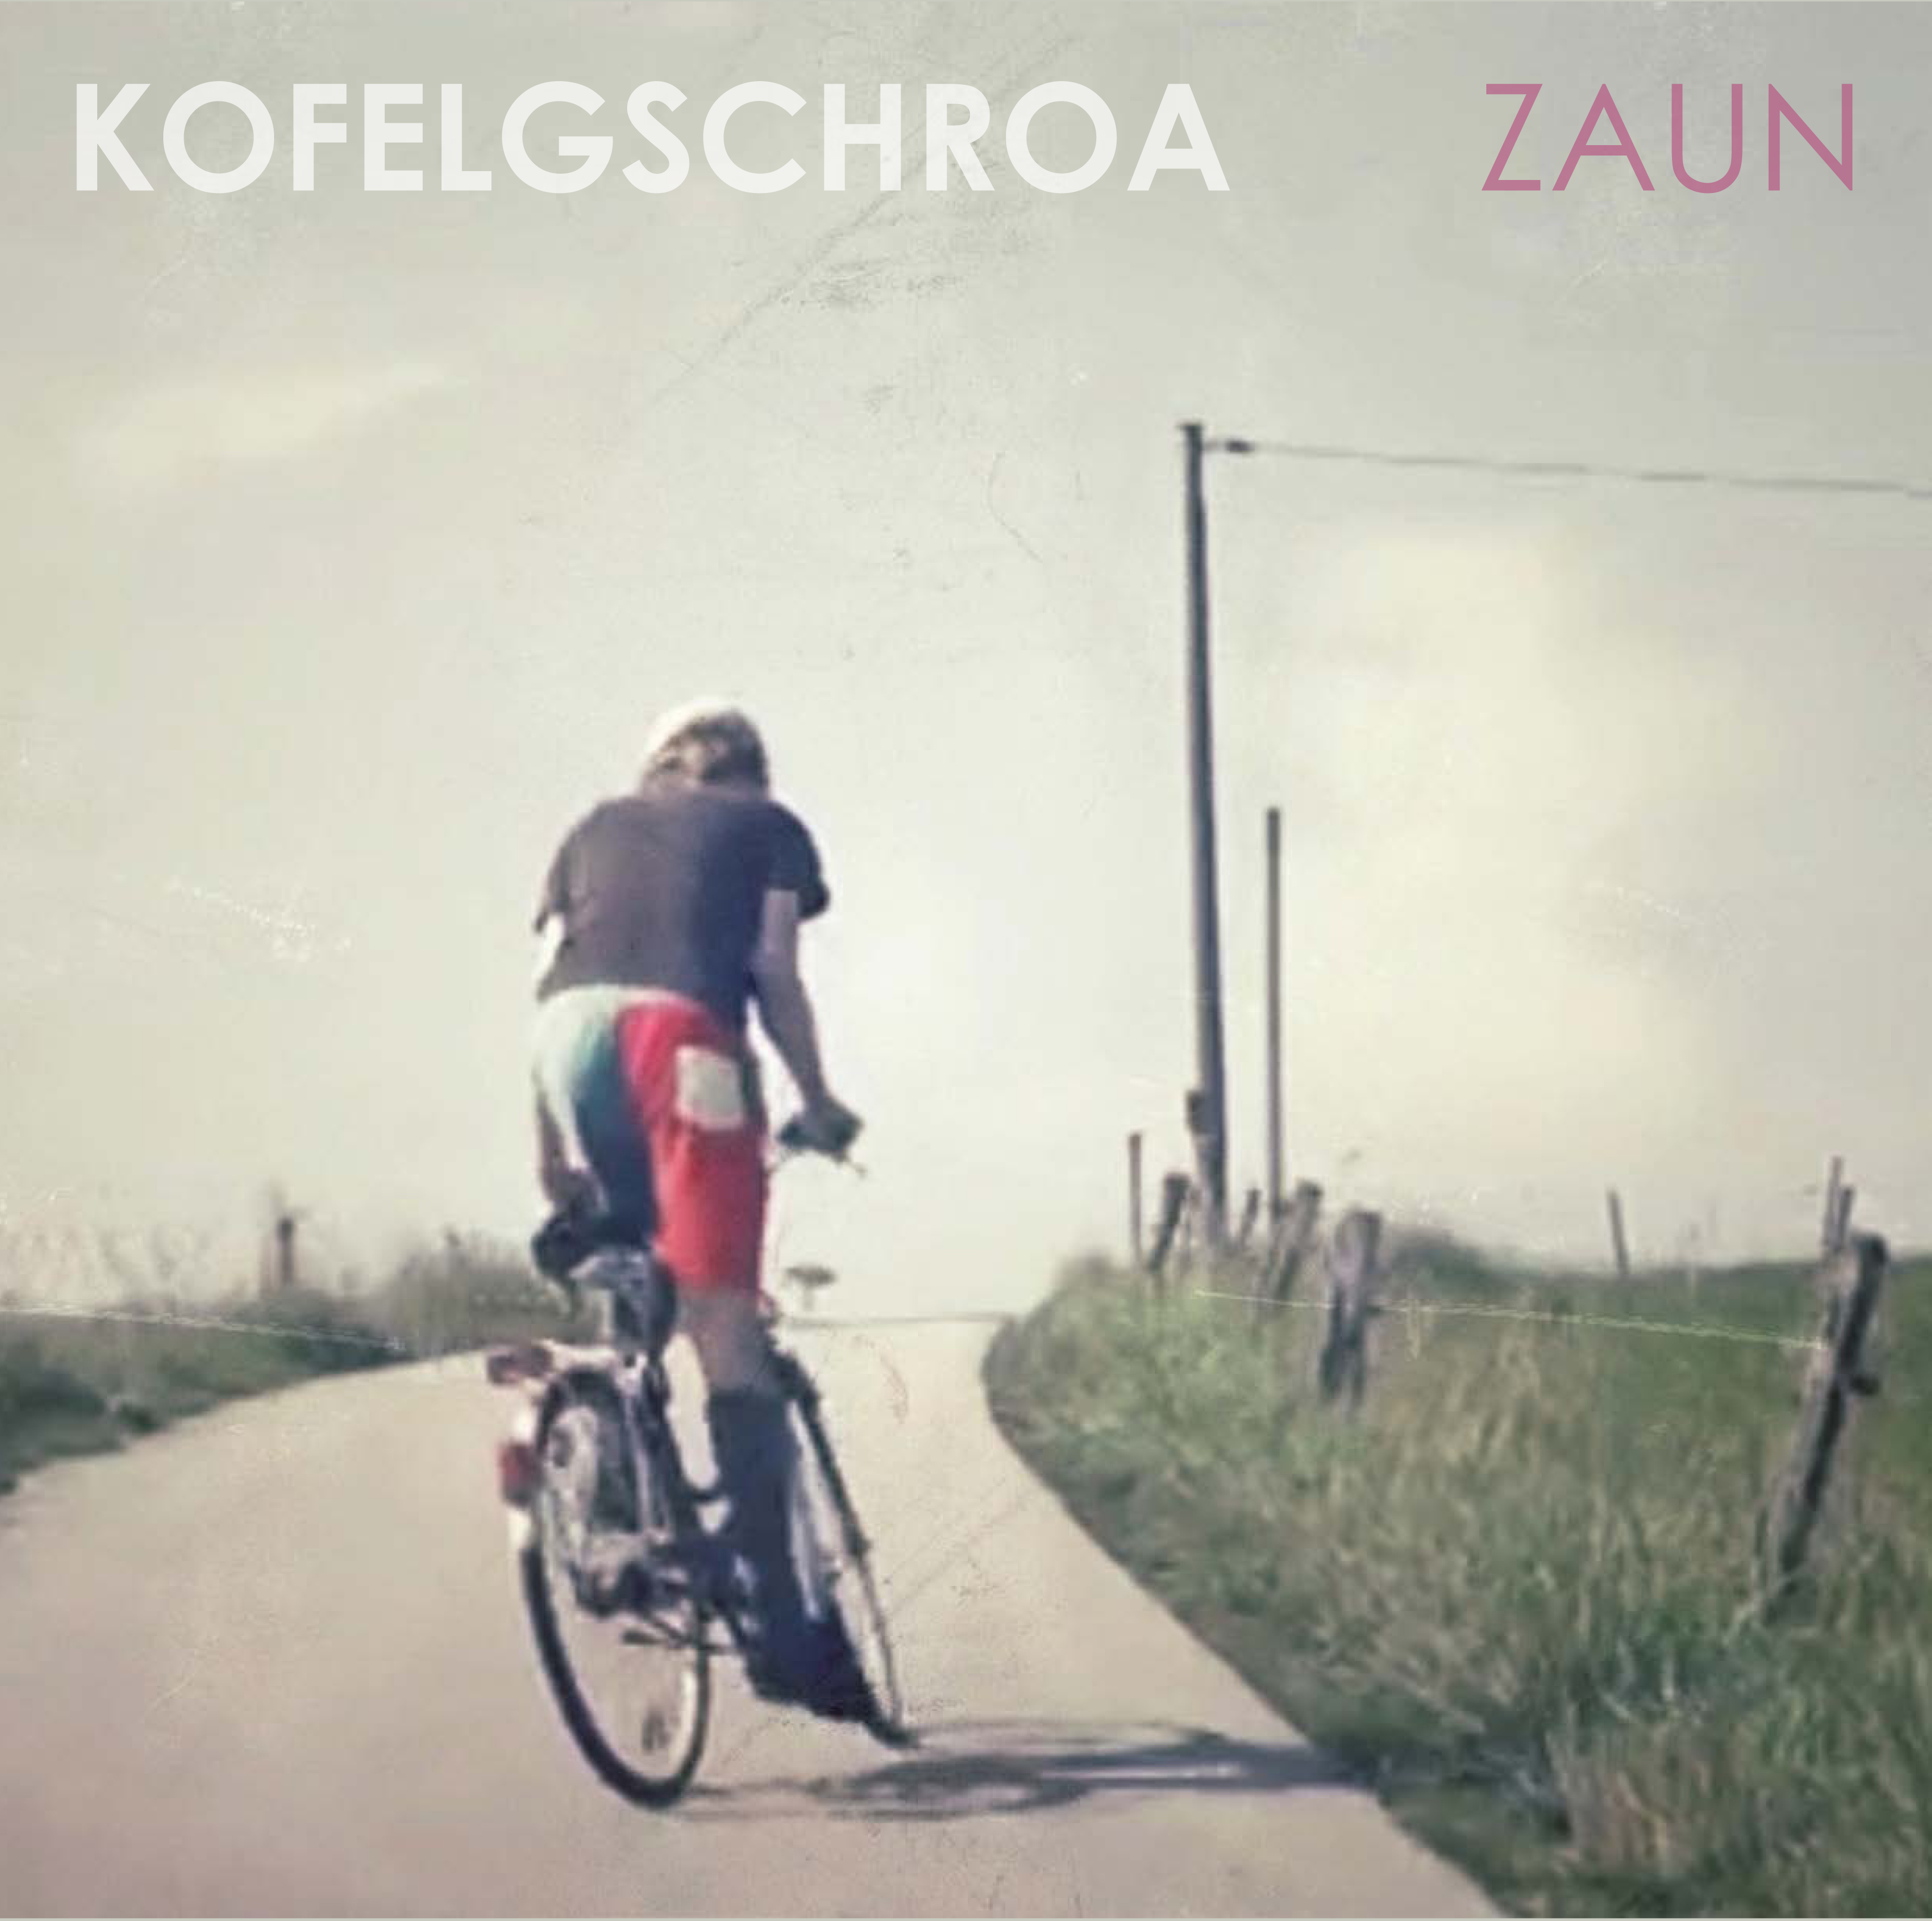 Kofelgschroa - Zaun als Doppel-Vinyl